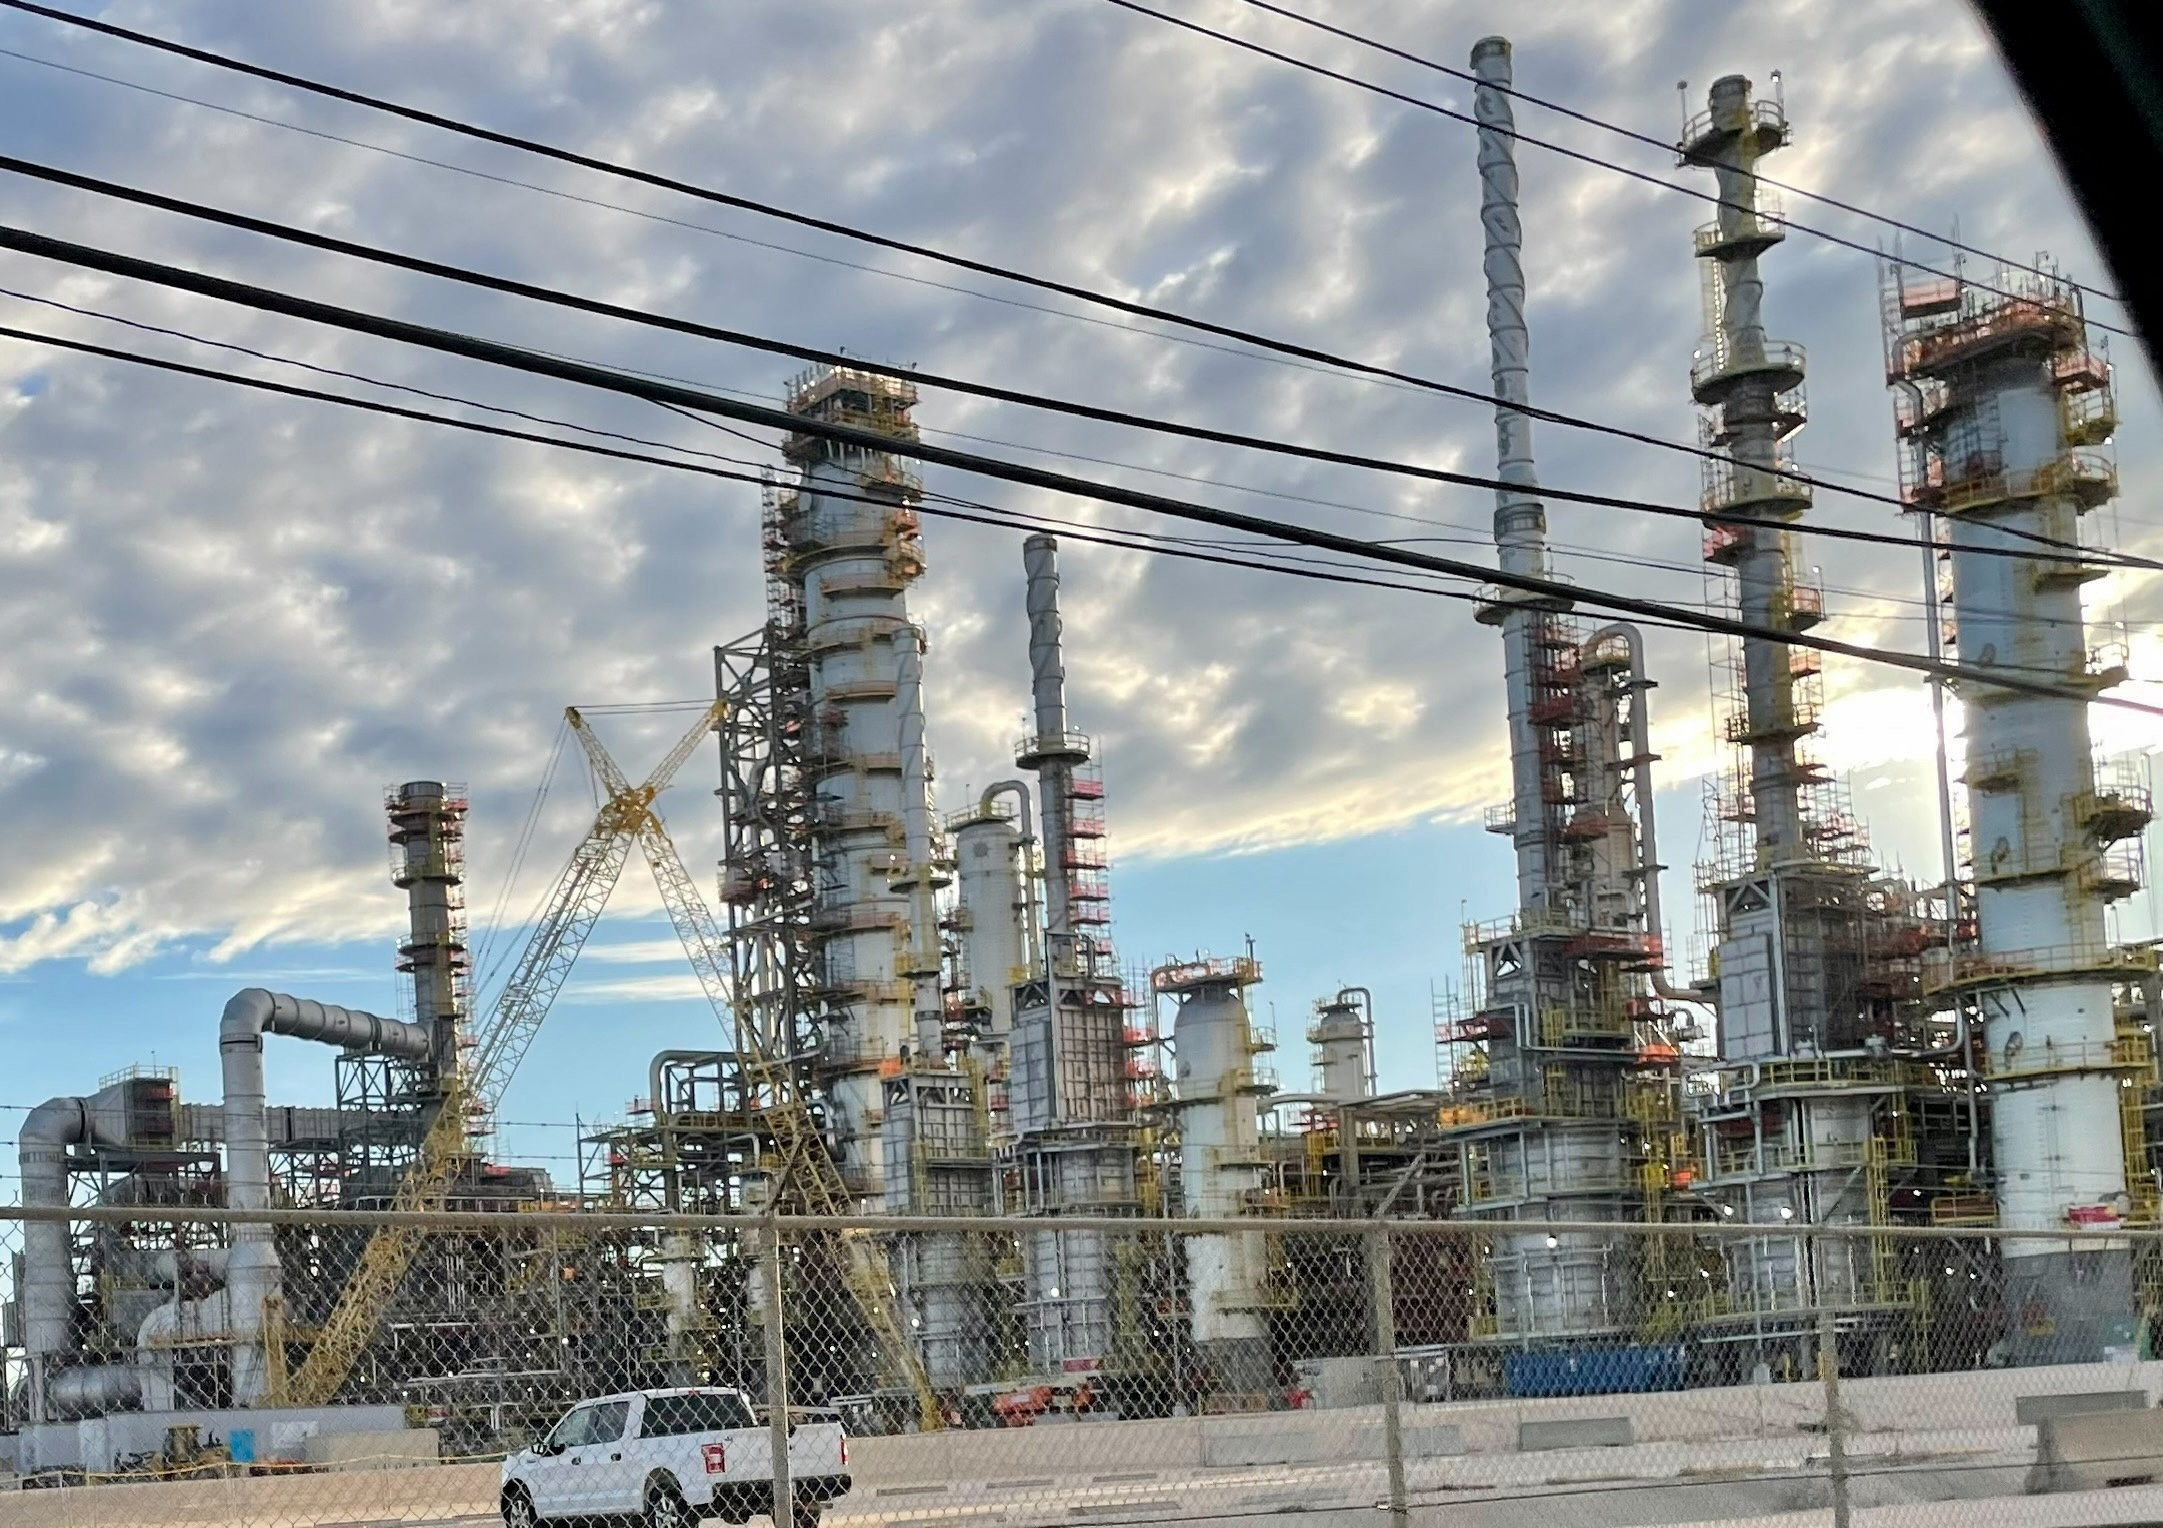 Vista general de la refinería de Exxon en Beaumont, Texas (REUTERS/Erwin Seba)